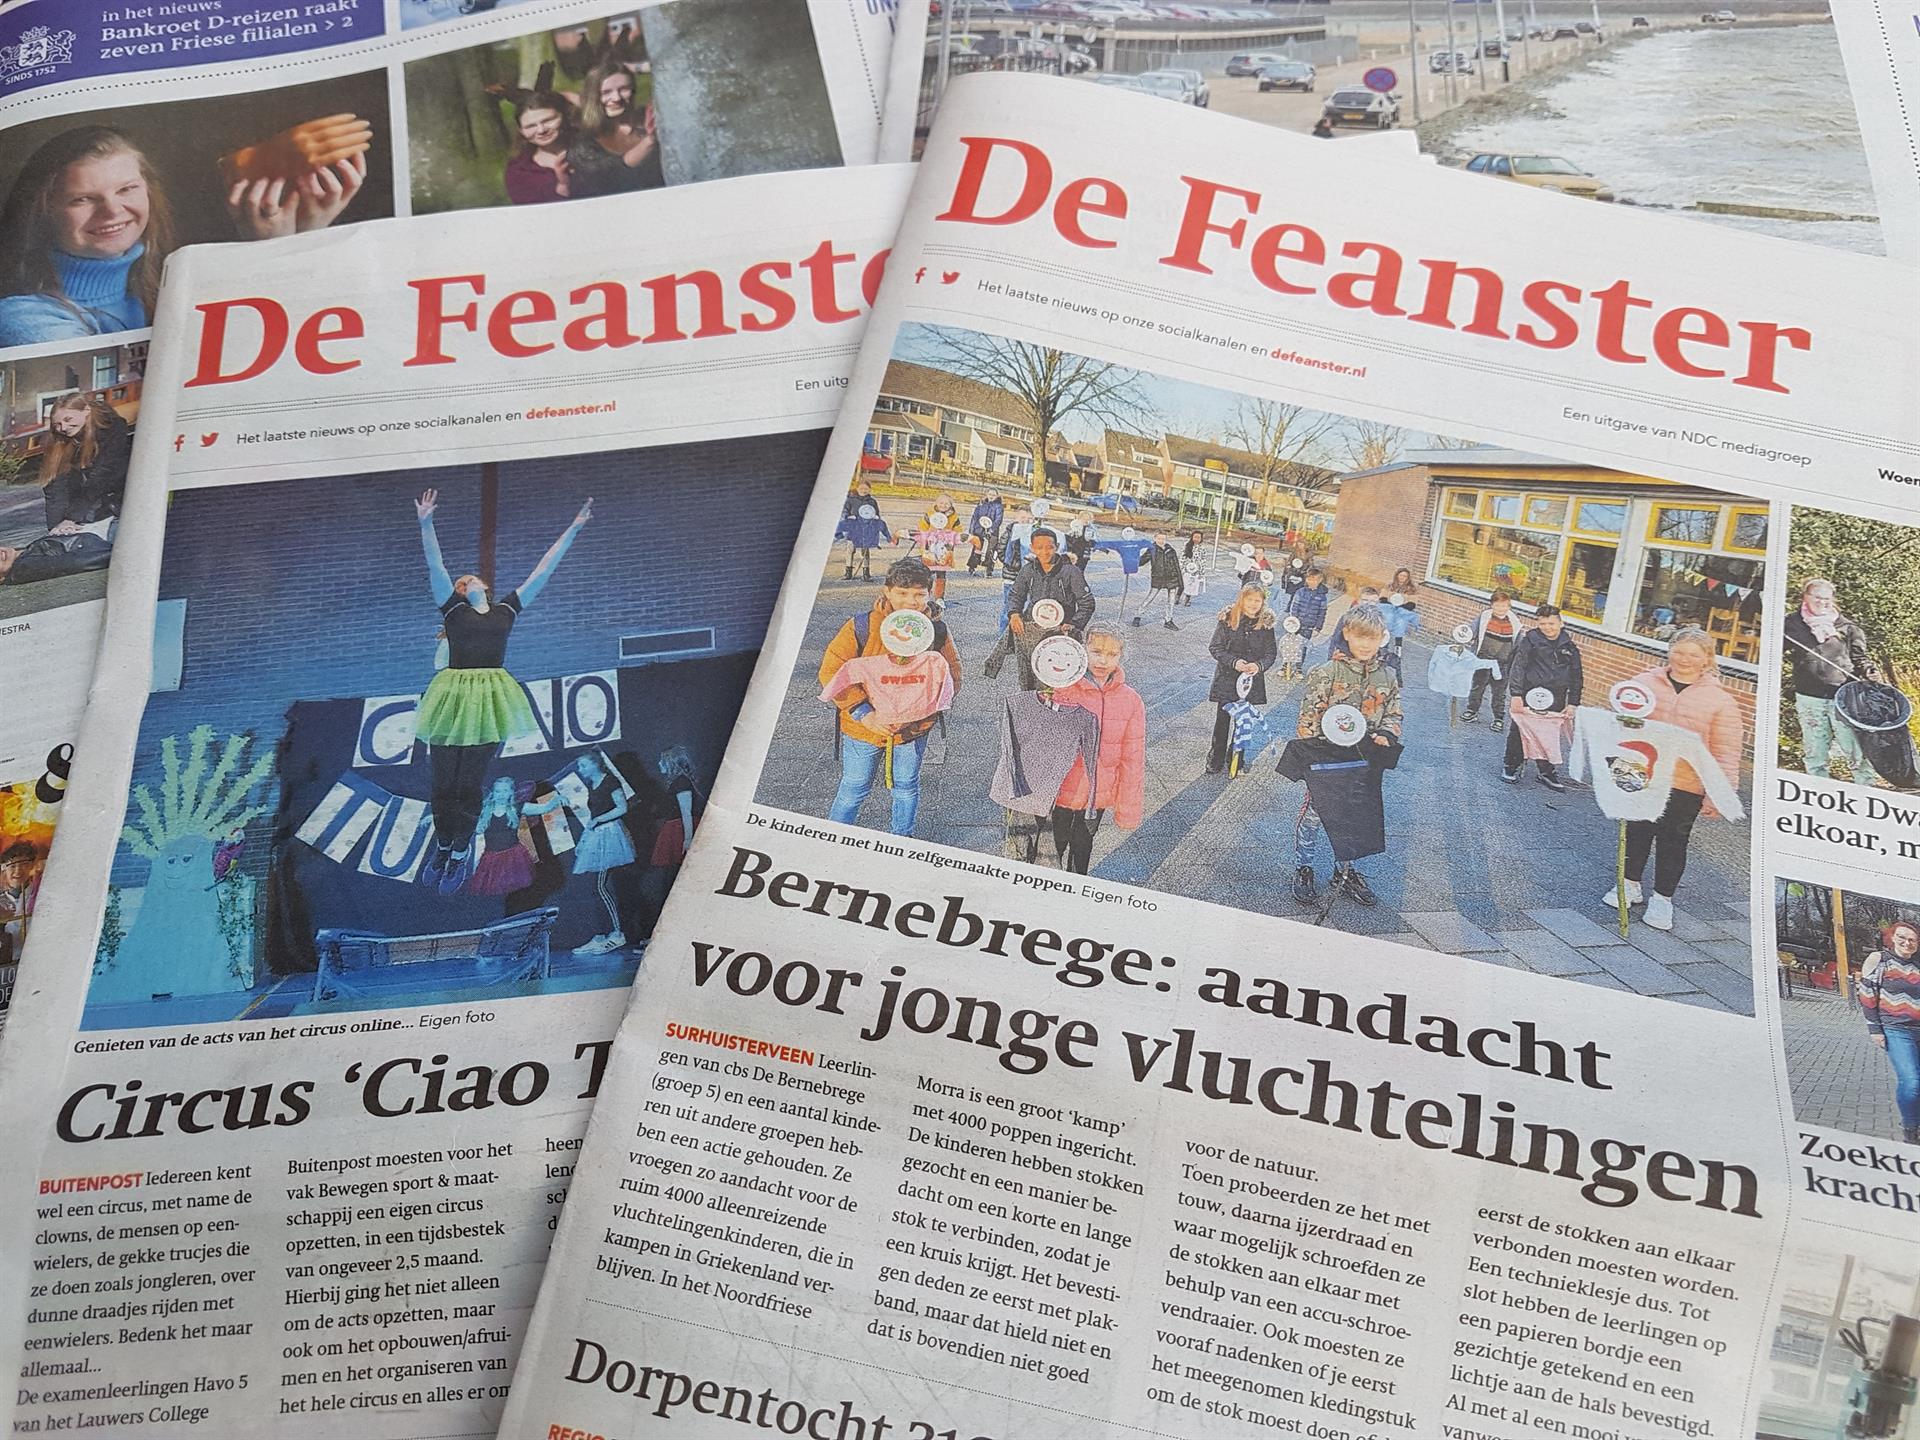 Weekblad De Feanster verdwijnt mogelijk